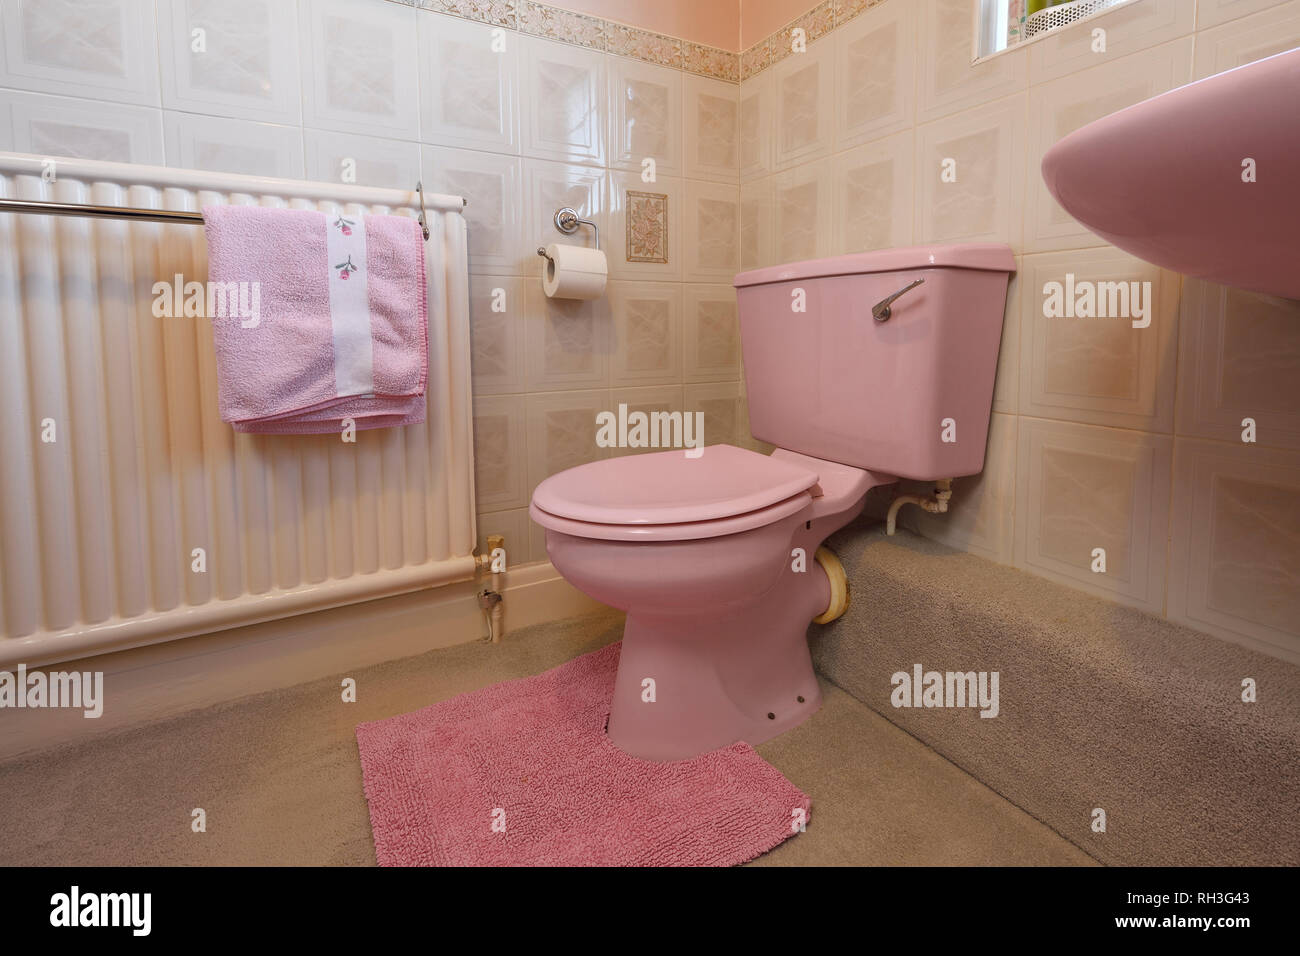 Une ancienne salle de bains de couleur rose pâle toilettes Banque D'Images